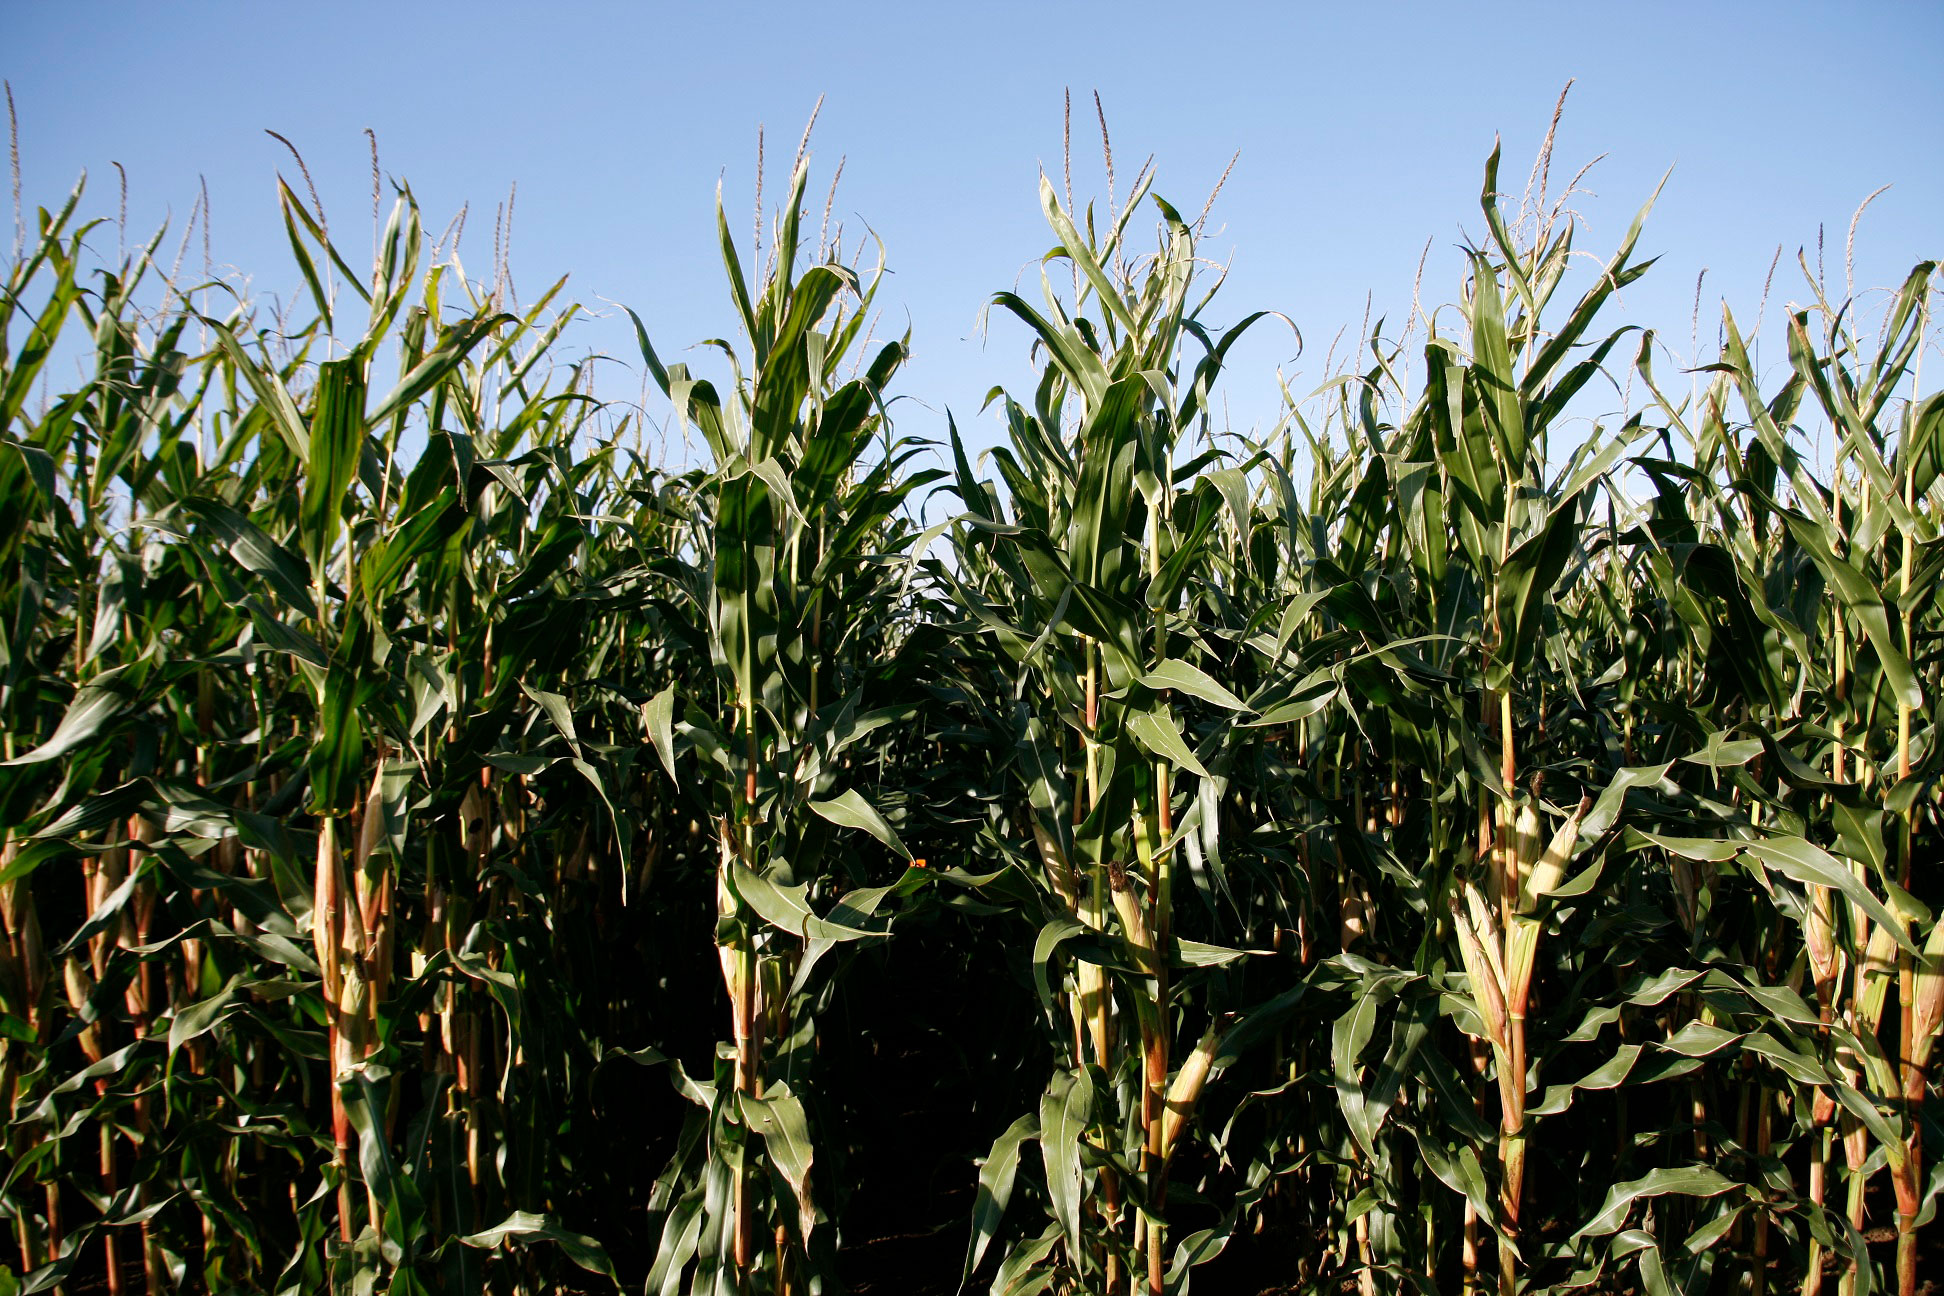 KWS Maissorten überzeugen auch unter schwierigen Bedingungen